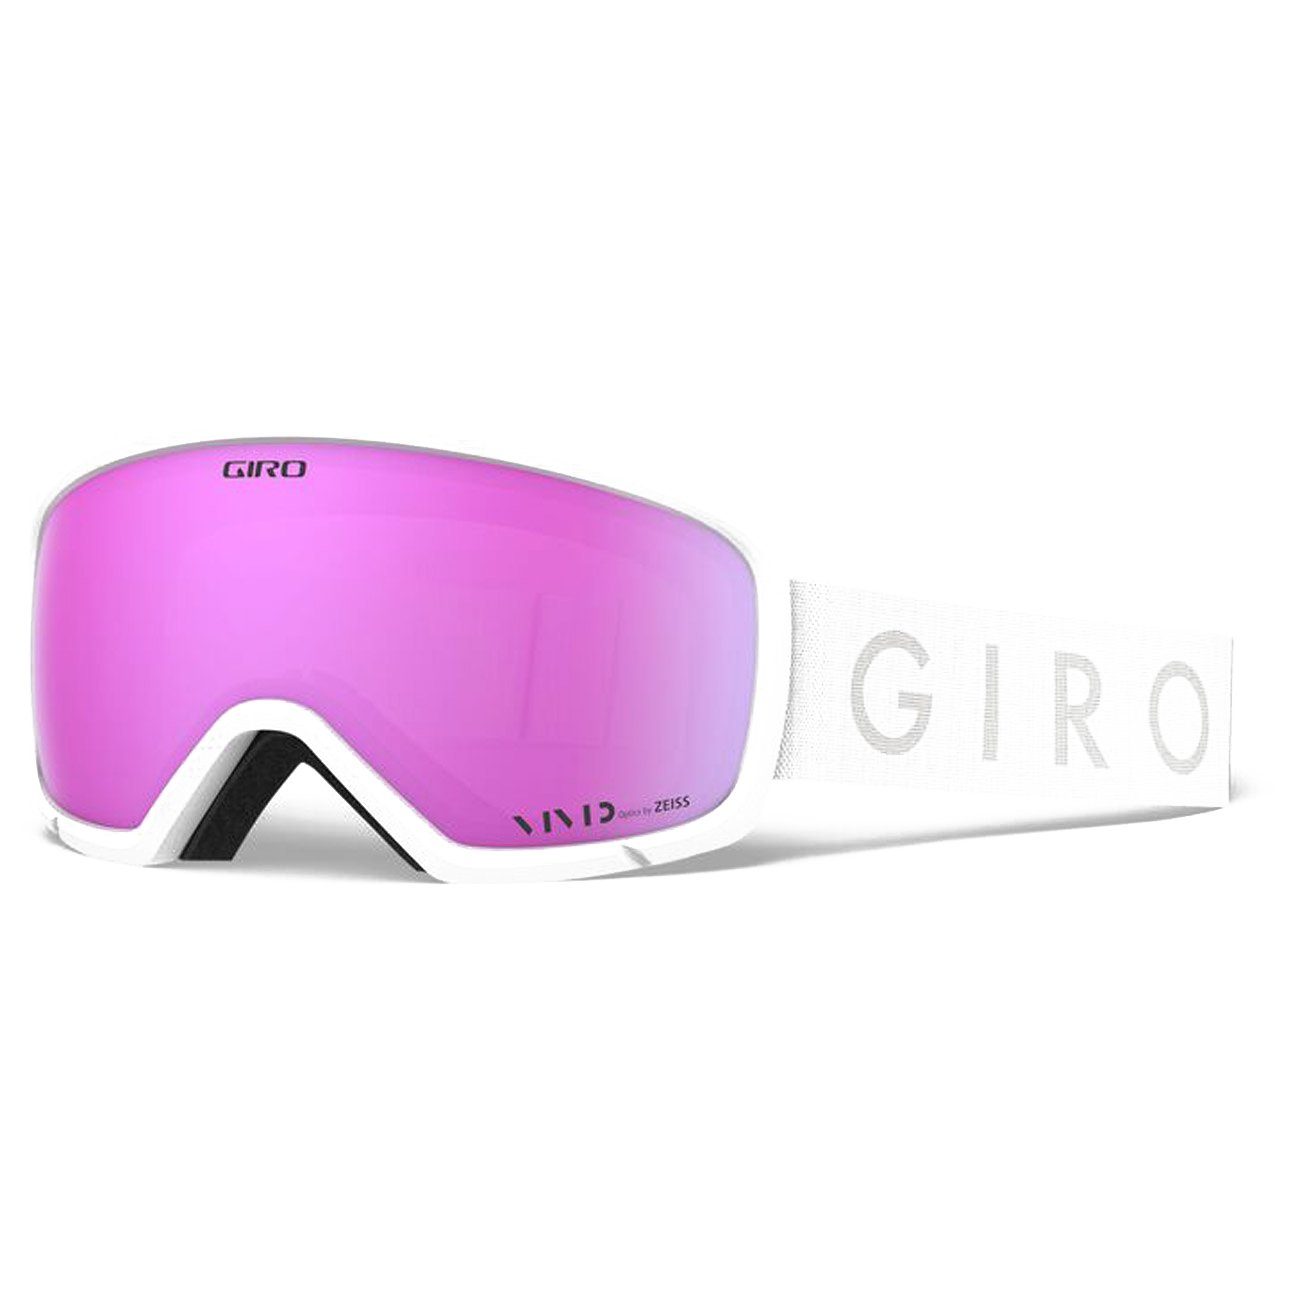 Giro Snowboardbrille, Millie white core light vivid pink